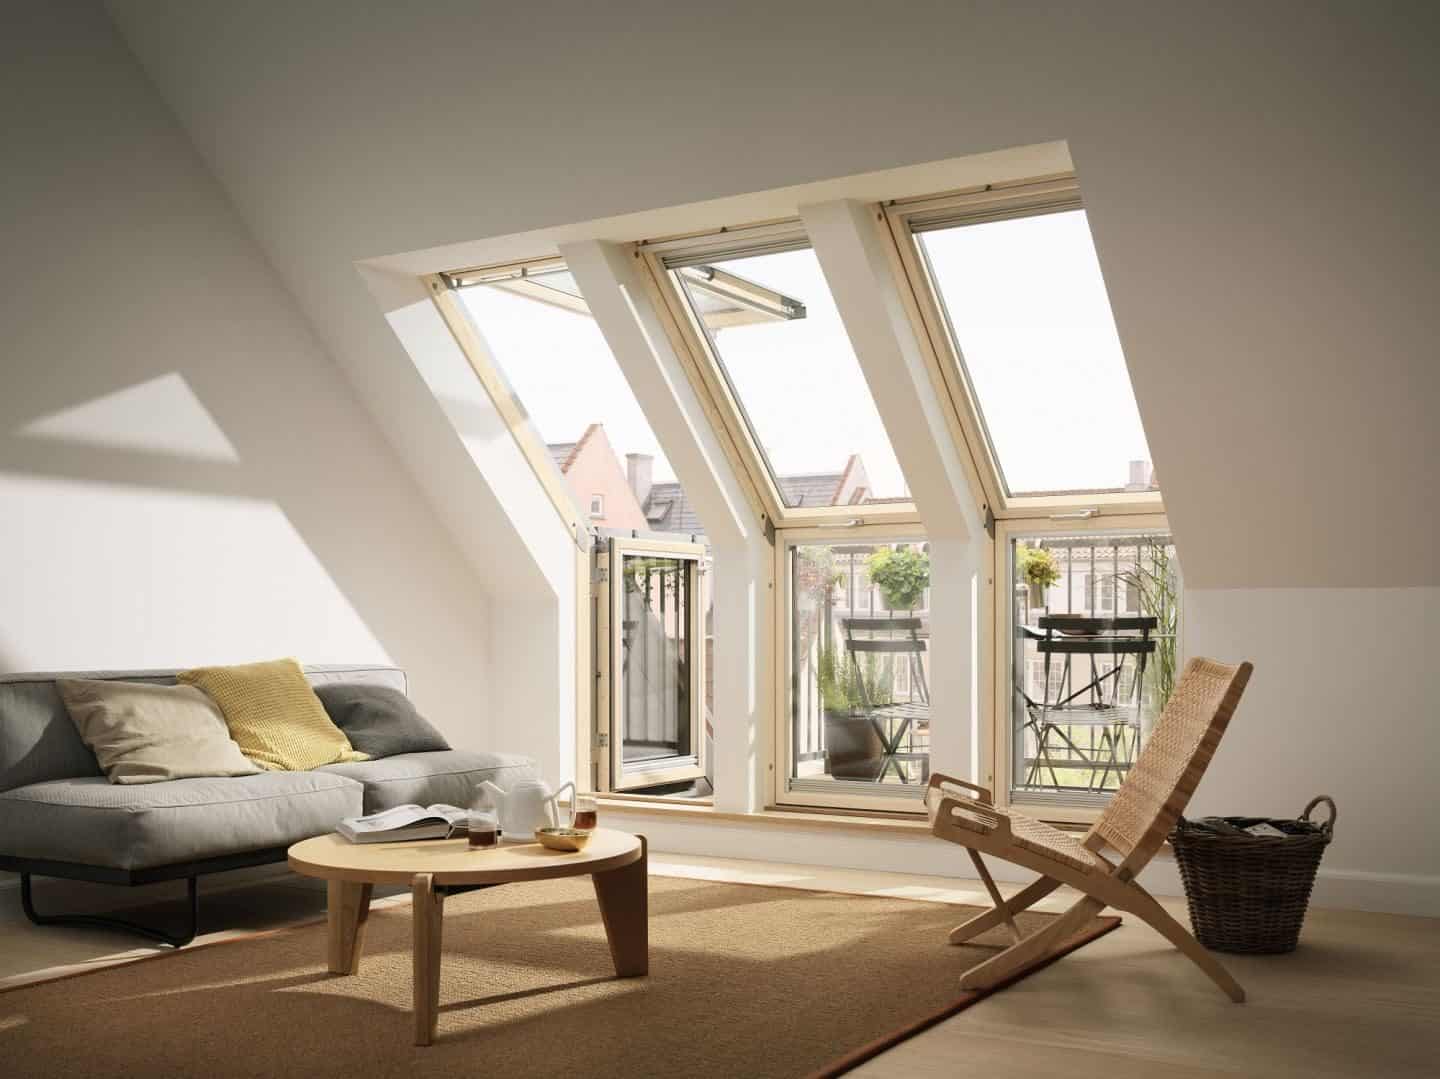 Ein Dachgeschoss-Wohnzimmer - was ist mit den Fenstern?